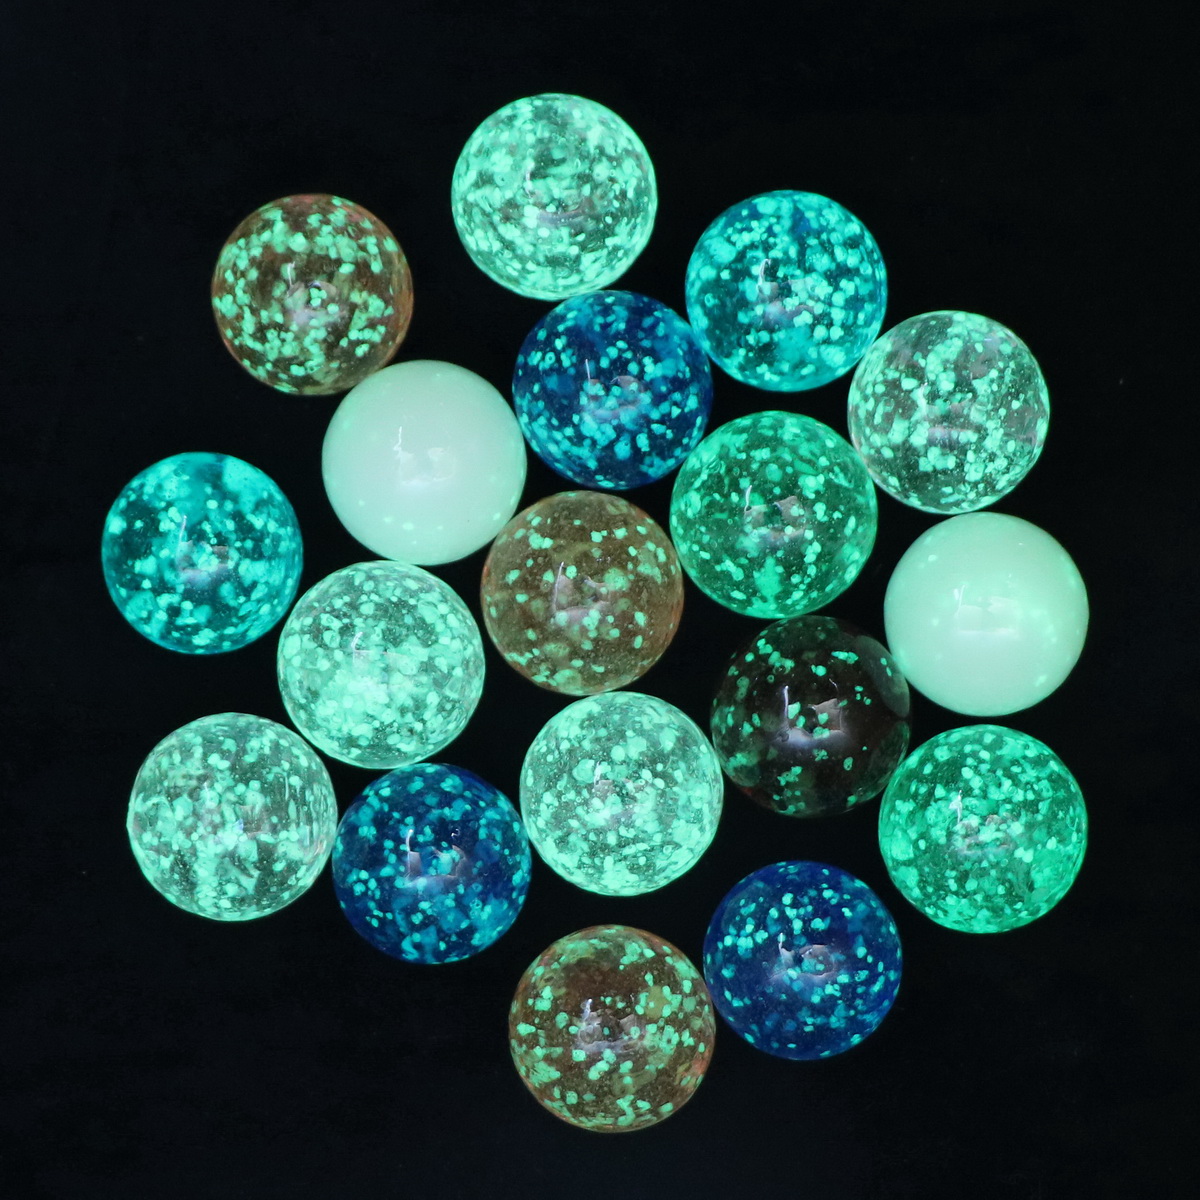 25毫米夜明珠夜光玻璃球荧光弹珠溜子工艺品鱼缸花瓶装饰儿童玩具